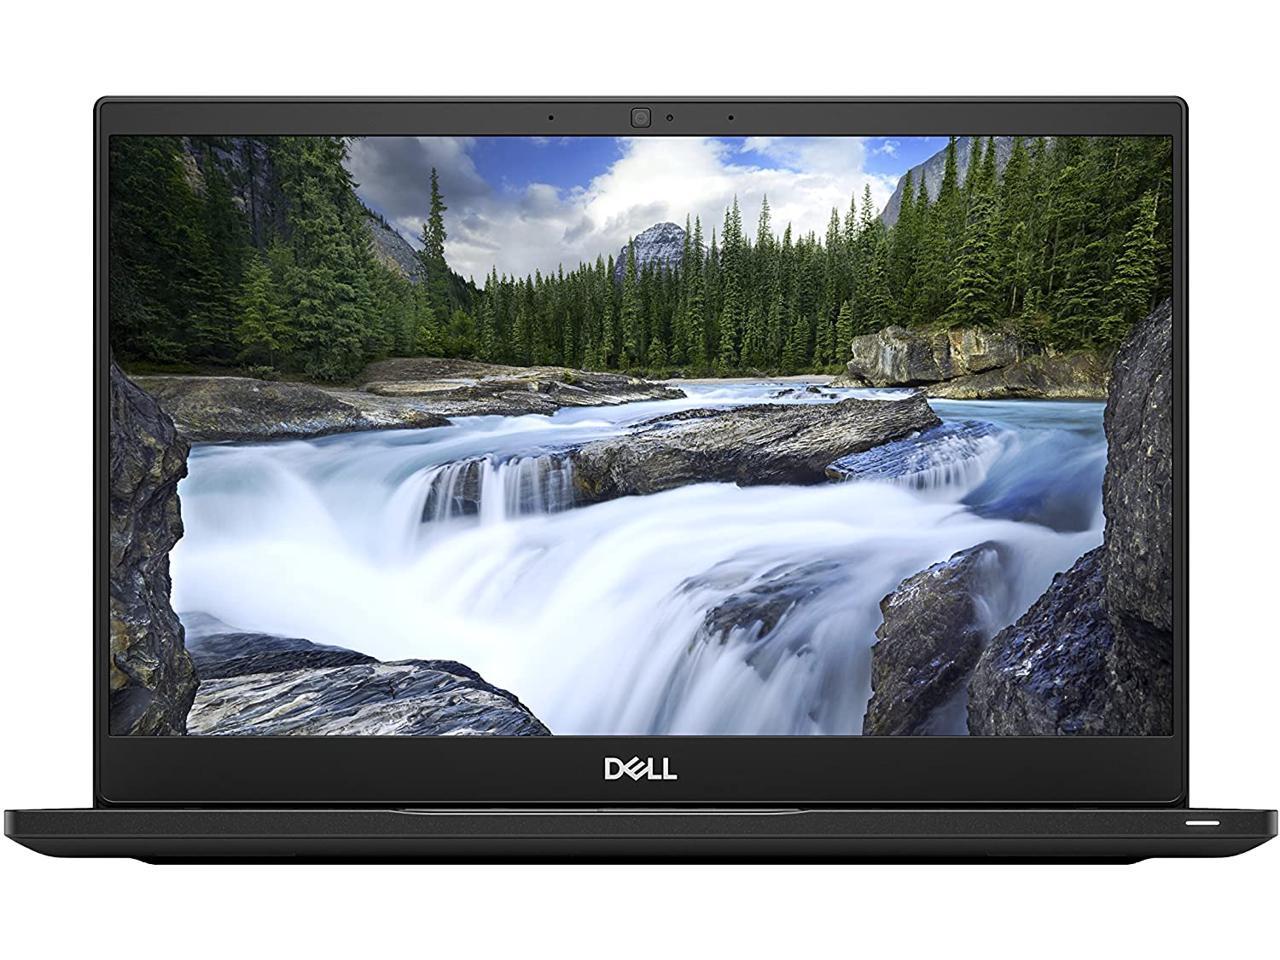 Dell Latitude 7390 13.3 inch 1920x1080 Full HD Touchscreen Laptop PC, Intel Quad Core i7-8650U 1.9GHz, 8GB Ram, 256GB SSD, Win 10 Pro Grade A